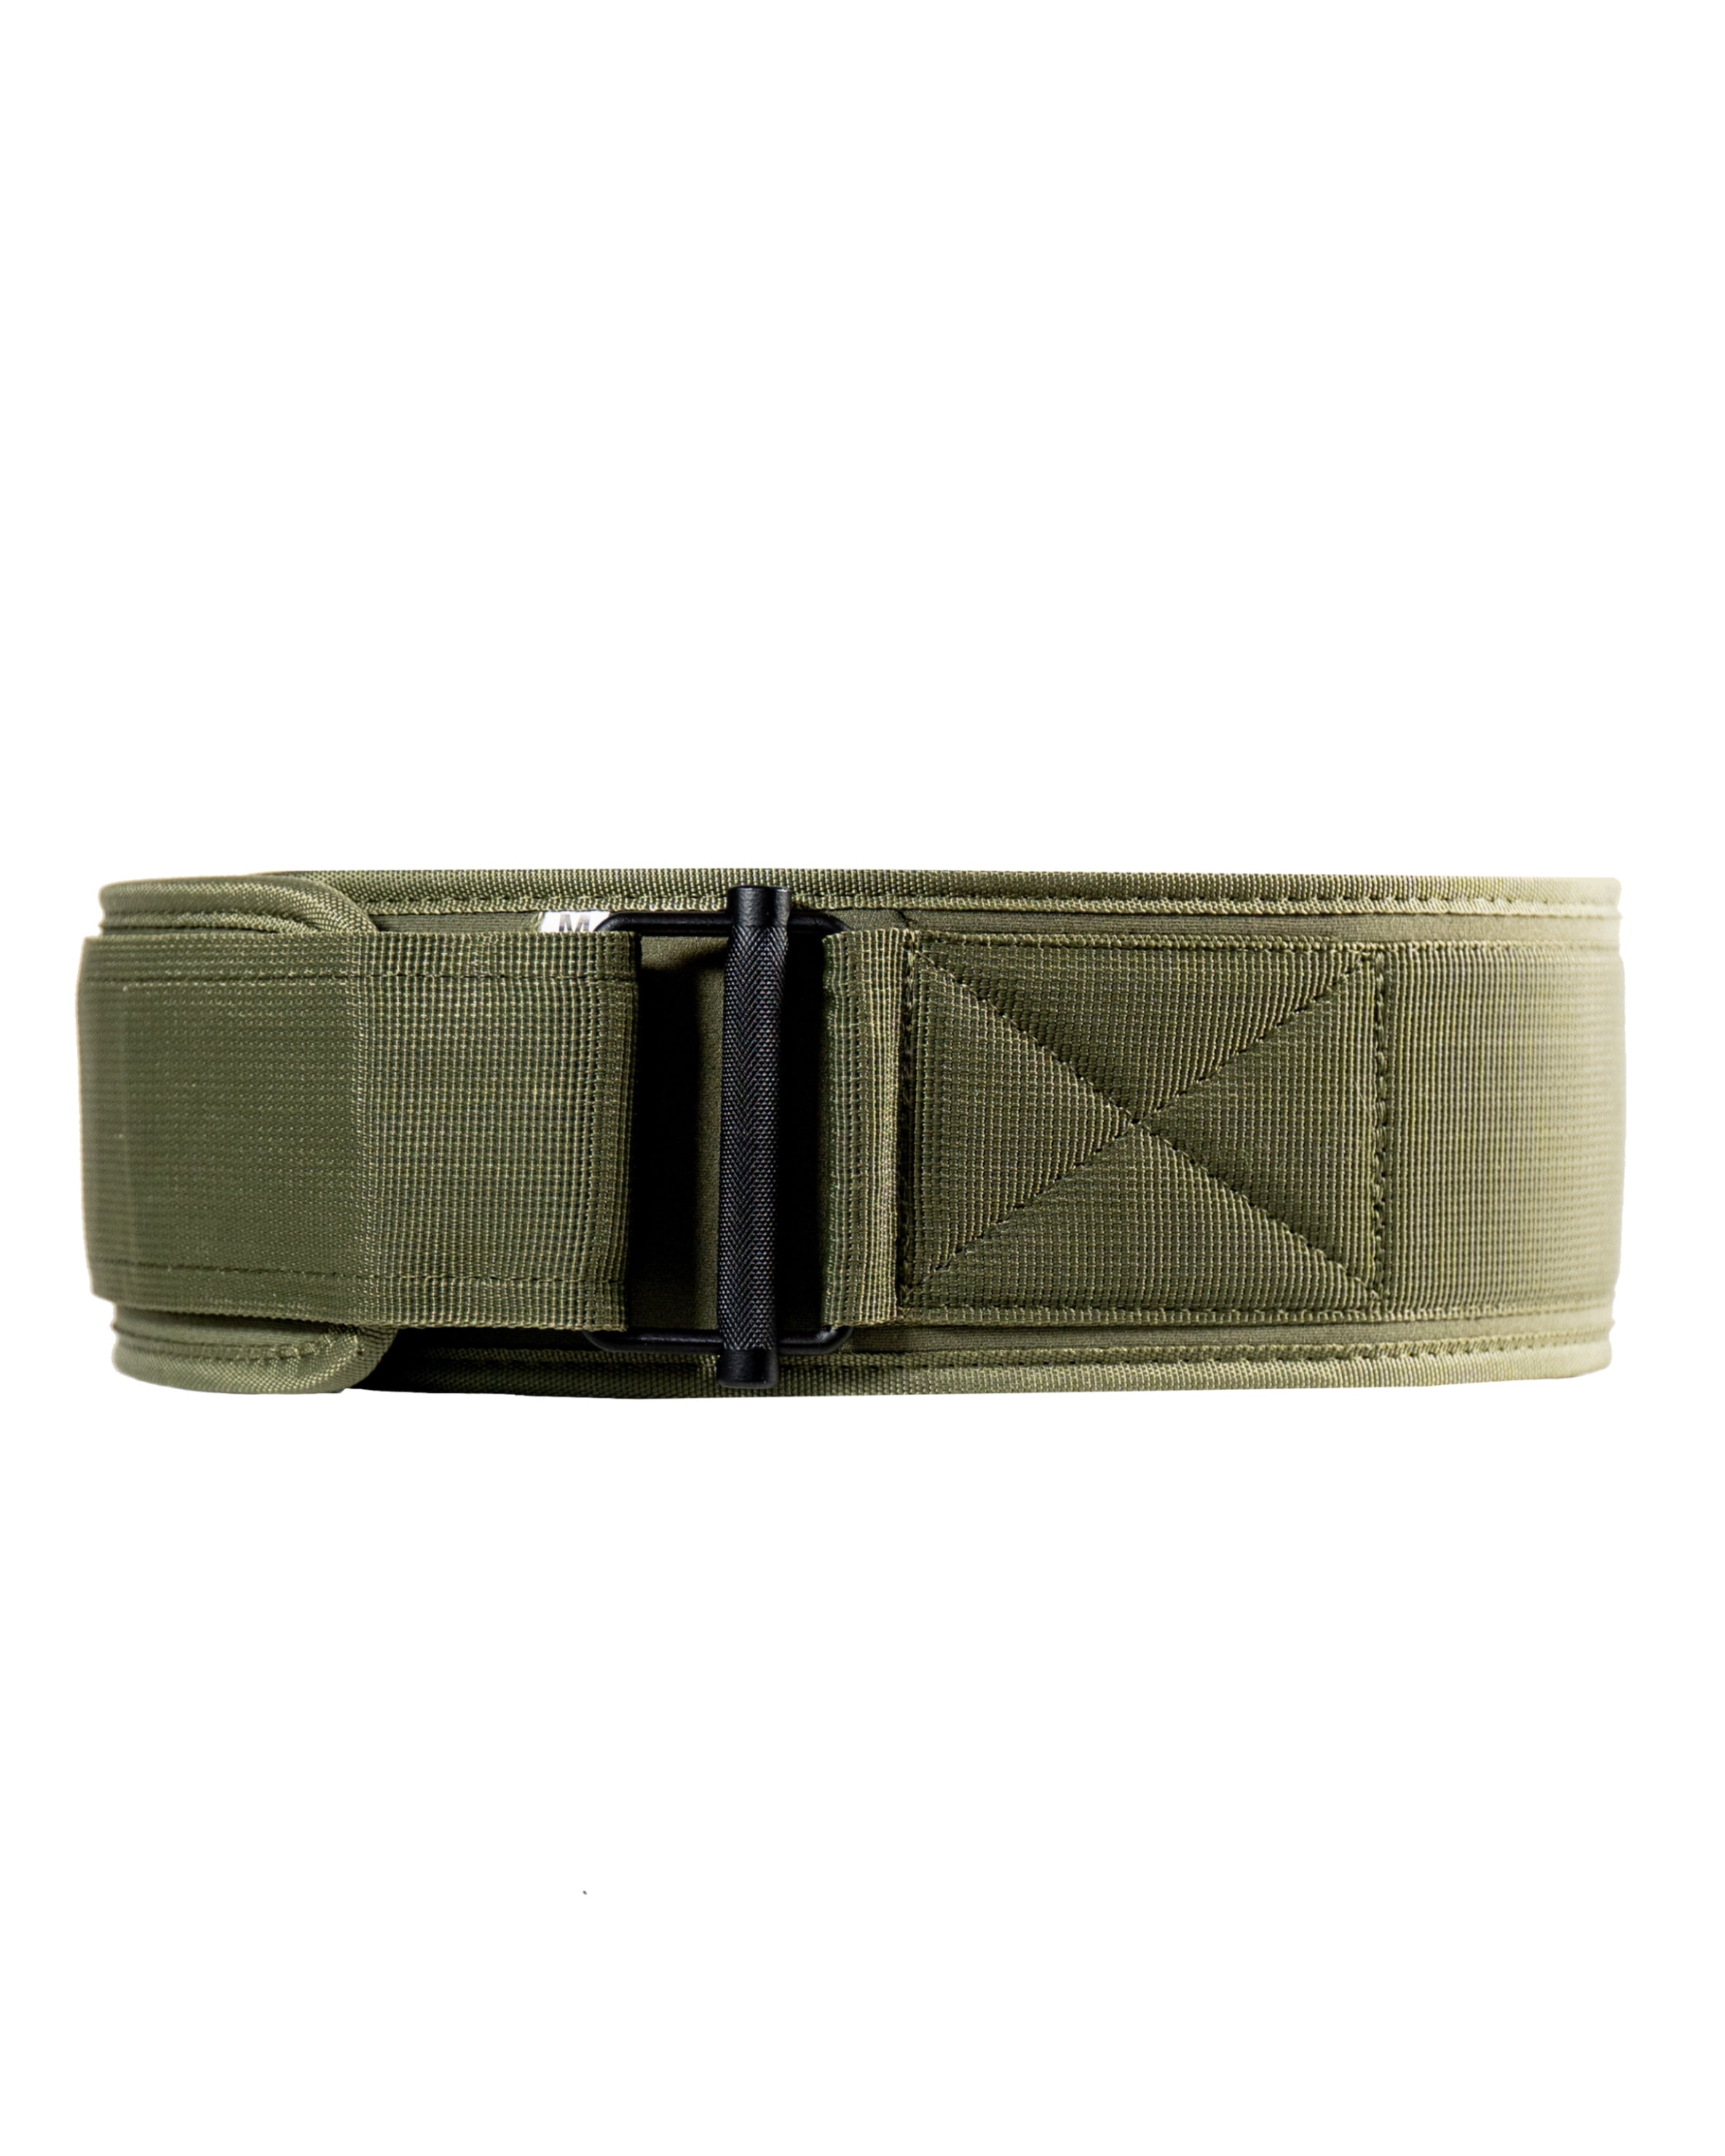 Stealth belt camo green